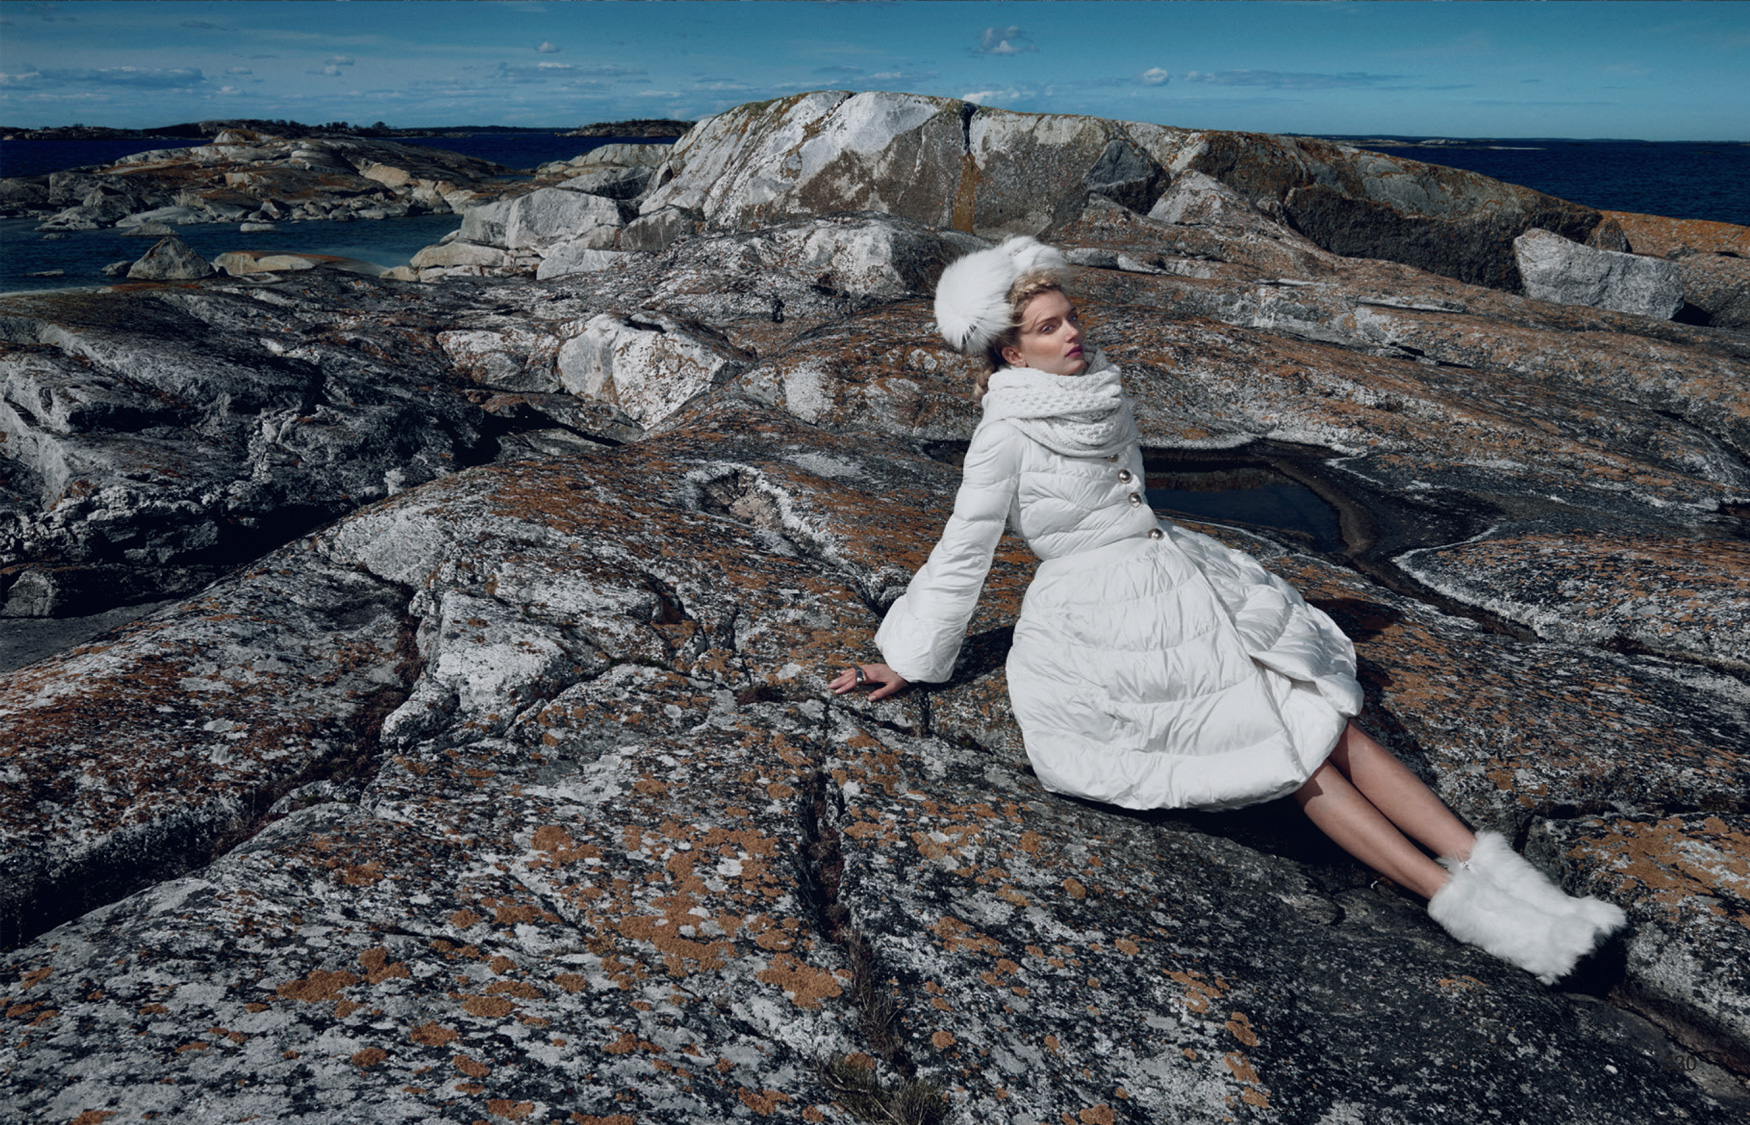 Giovanna-Battaglia-Vogue-Japan-The-Nordic-Queen-October-2015-Emma-Summerton-5.jpg